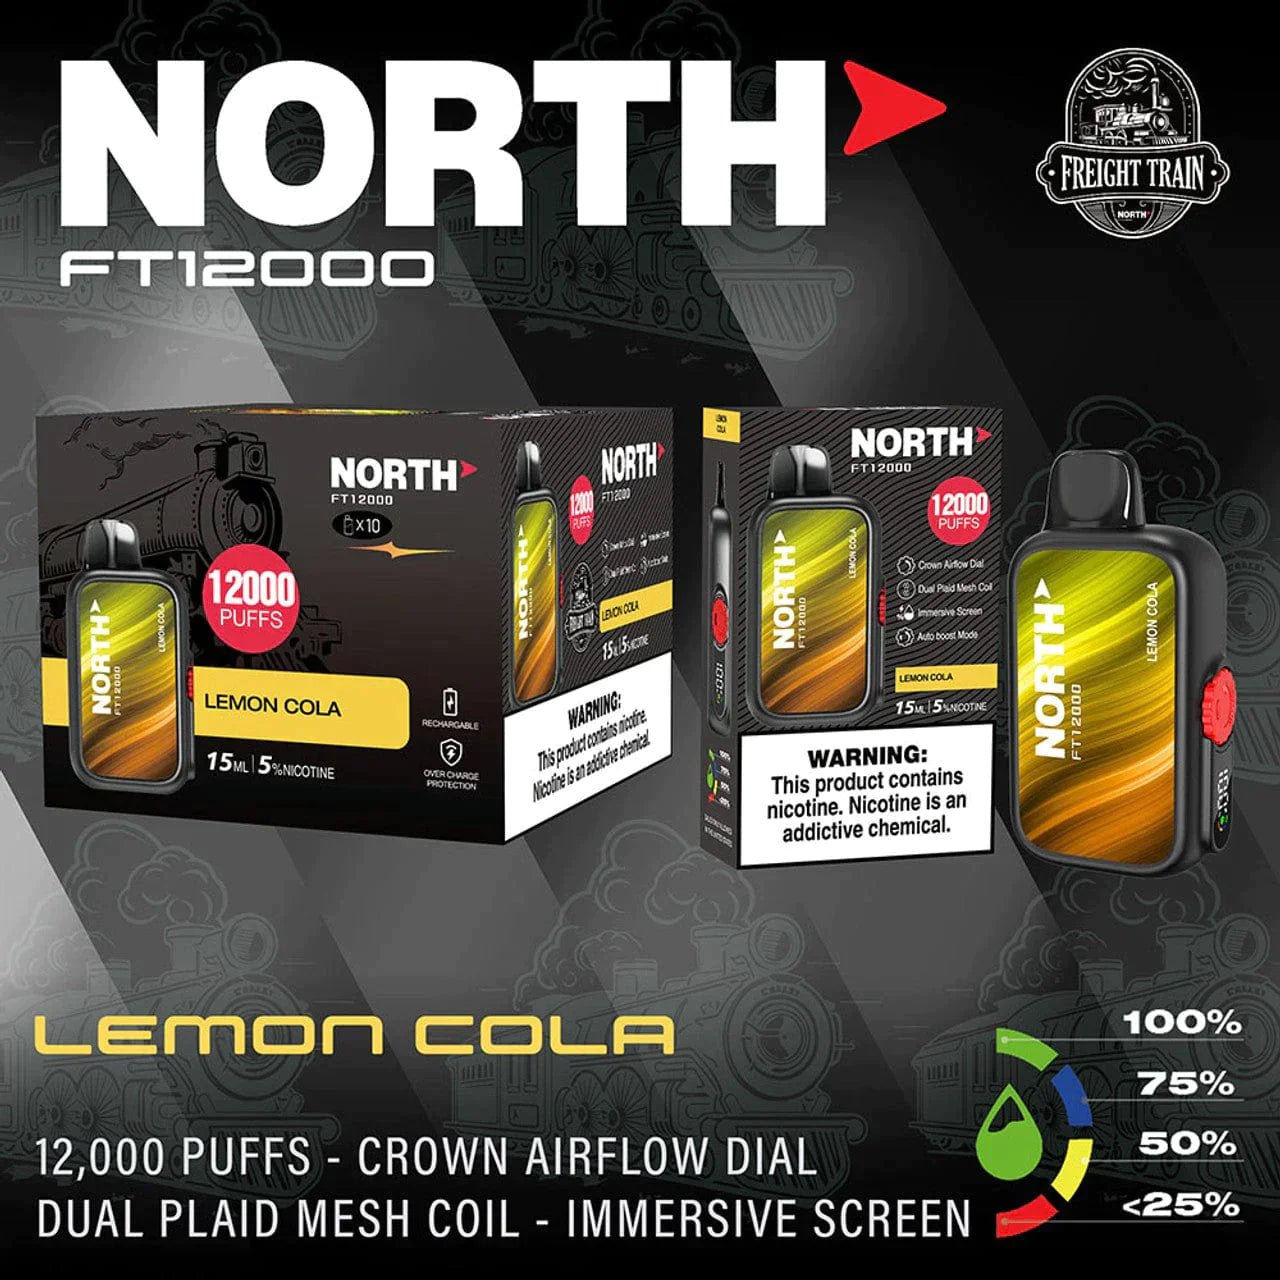 North FT12000 Disposable Vape 15mL Best Flavor Lemon Cola